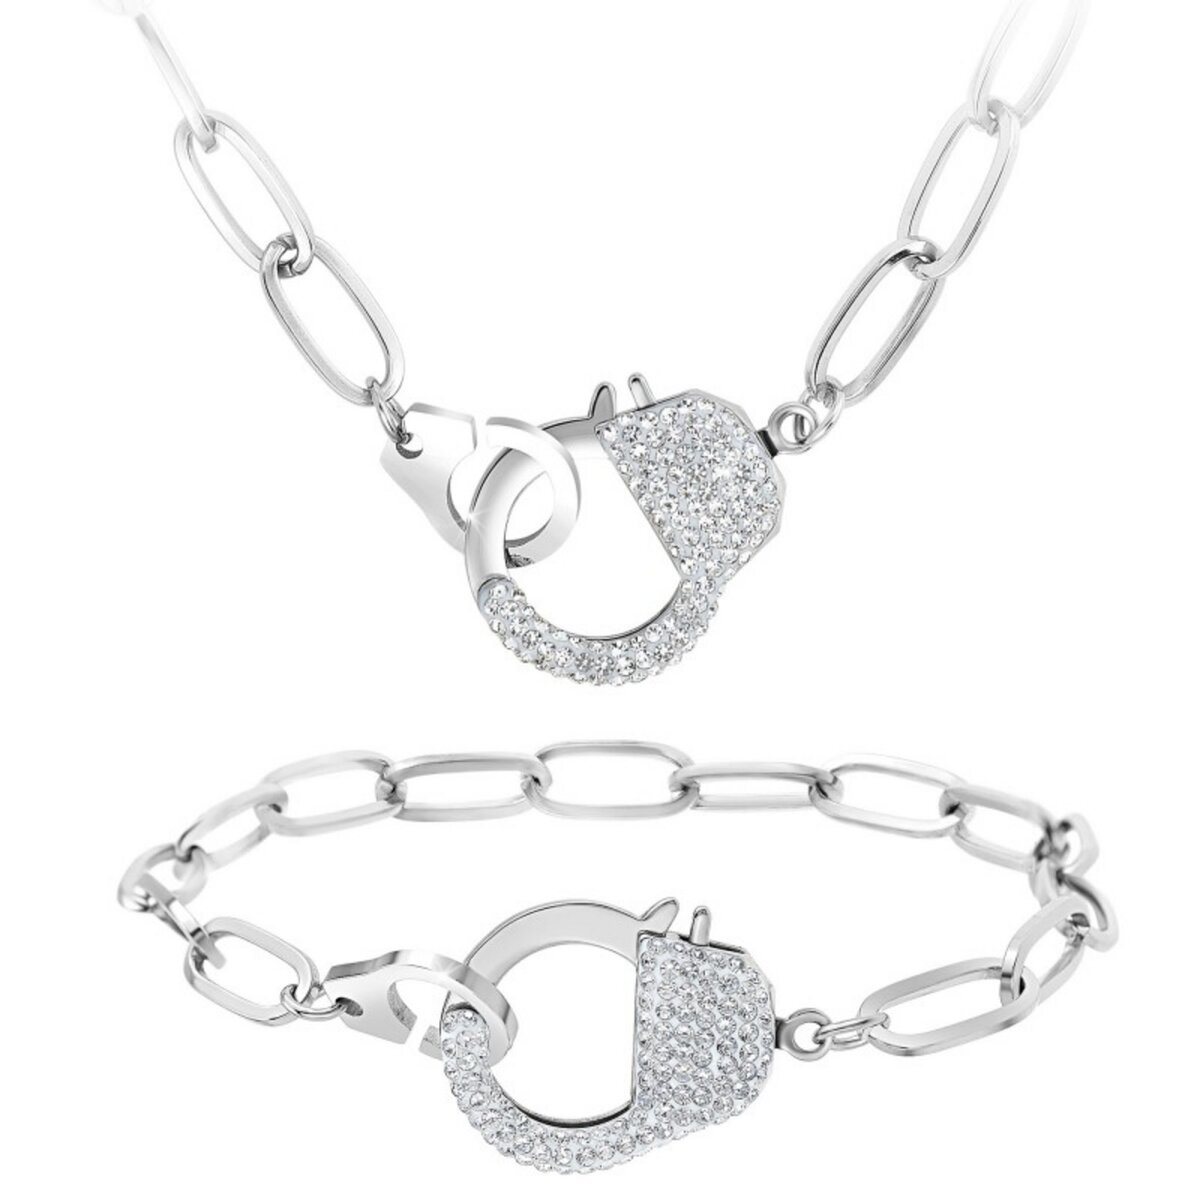 SC CRYSTAL Parure collier et bracelet menotte SC Crystal ornée de Cristaux scintillants